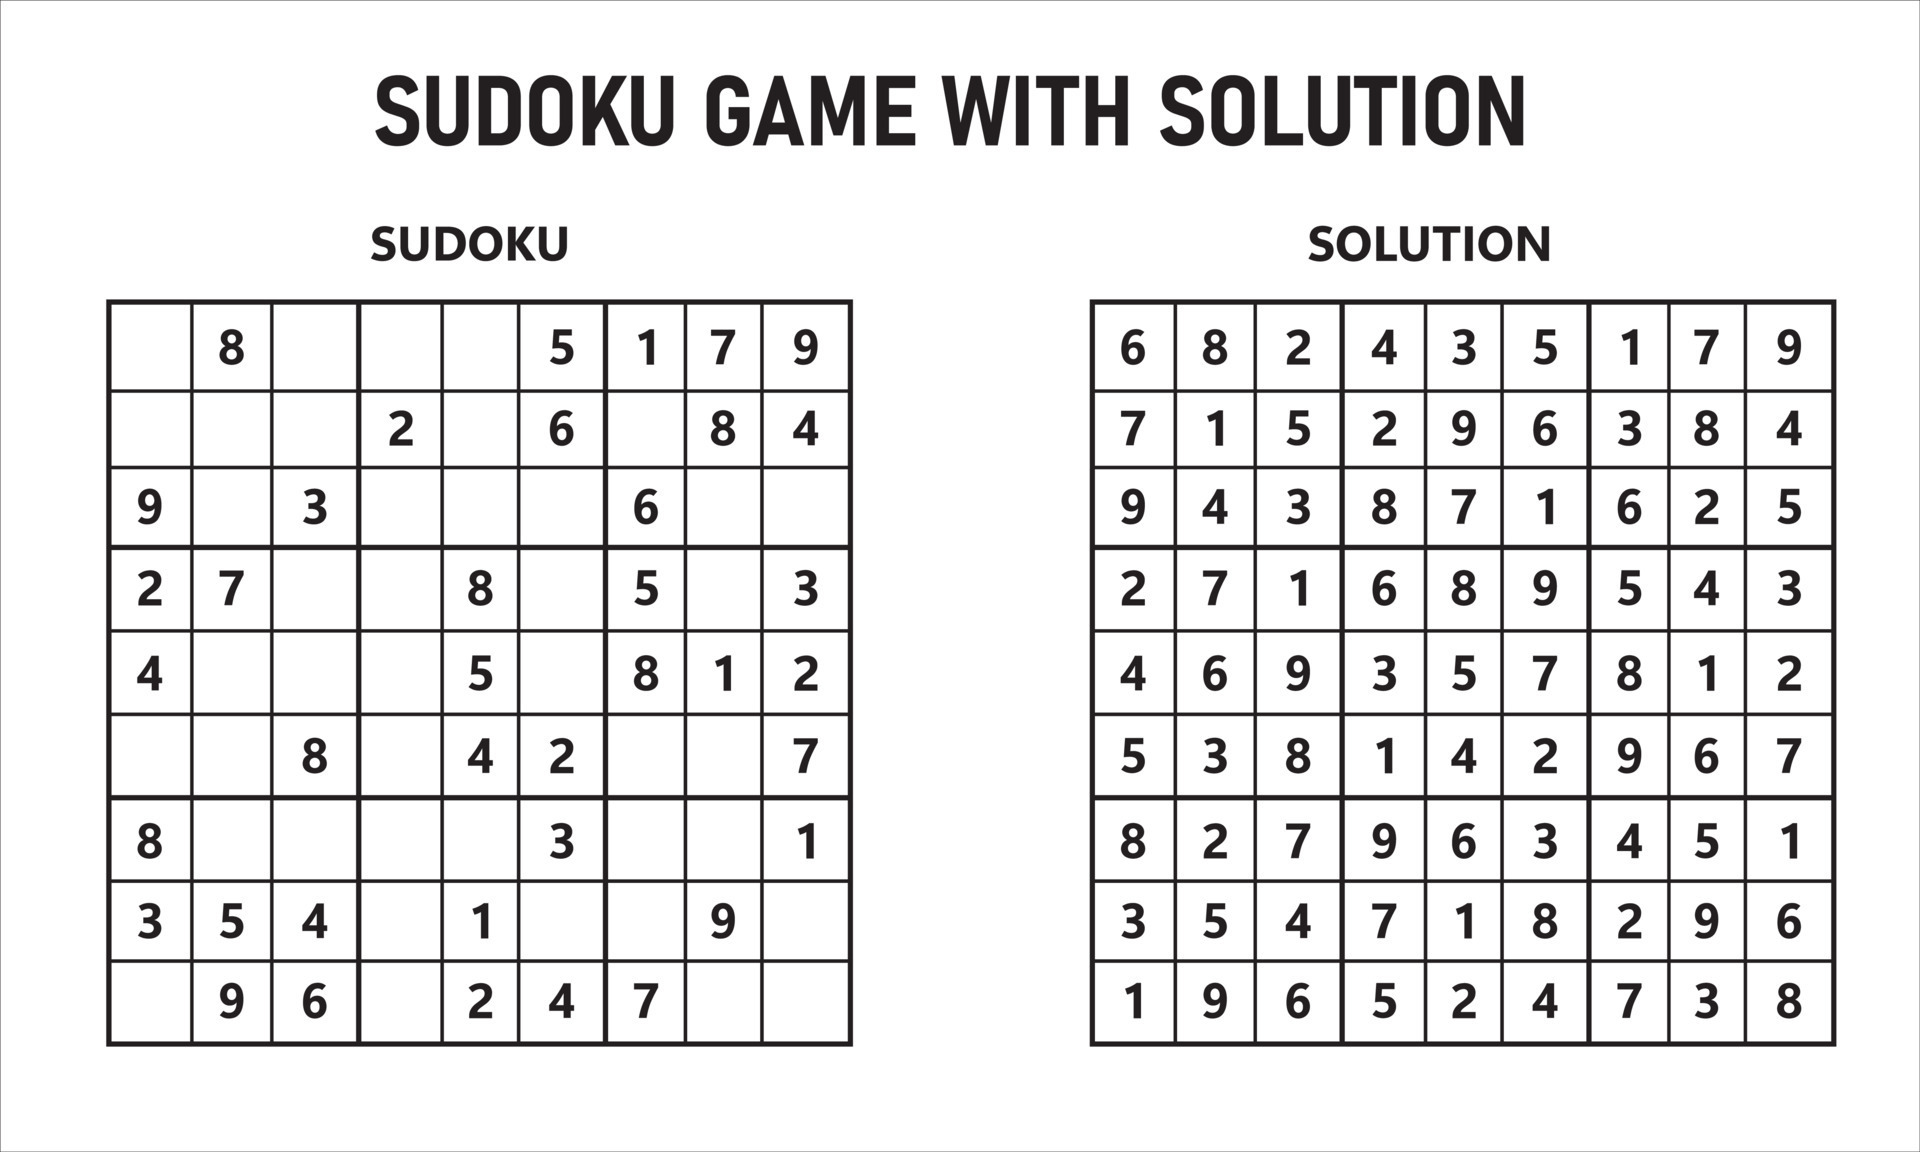 sudoku per bambini con funghi. educativo gioco per bambini 25360422 Arte  vettoriale a Vecteezy